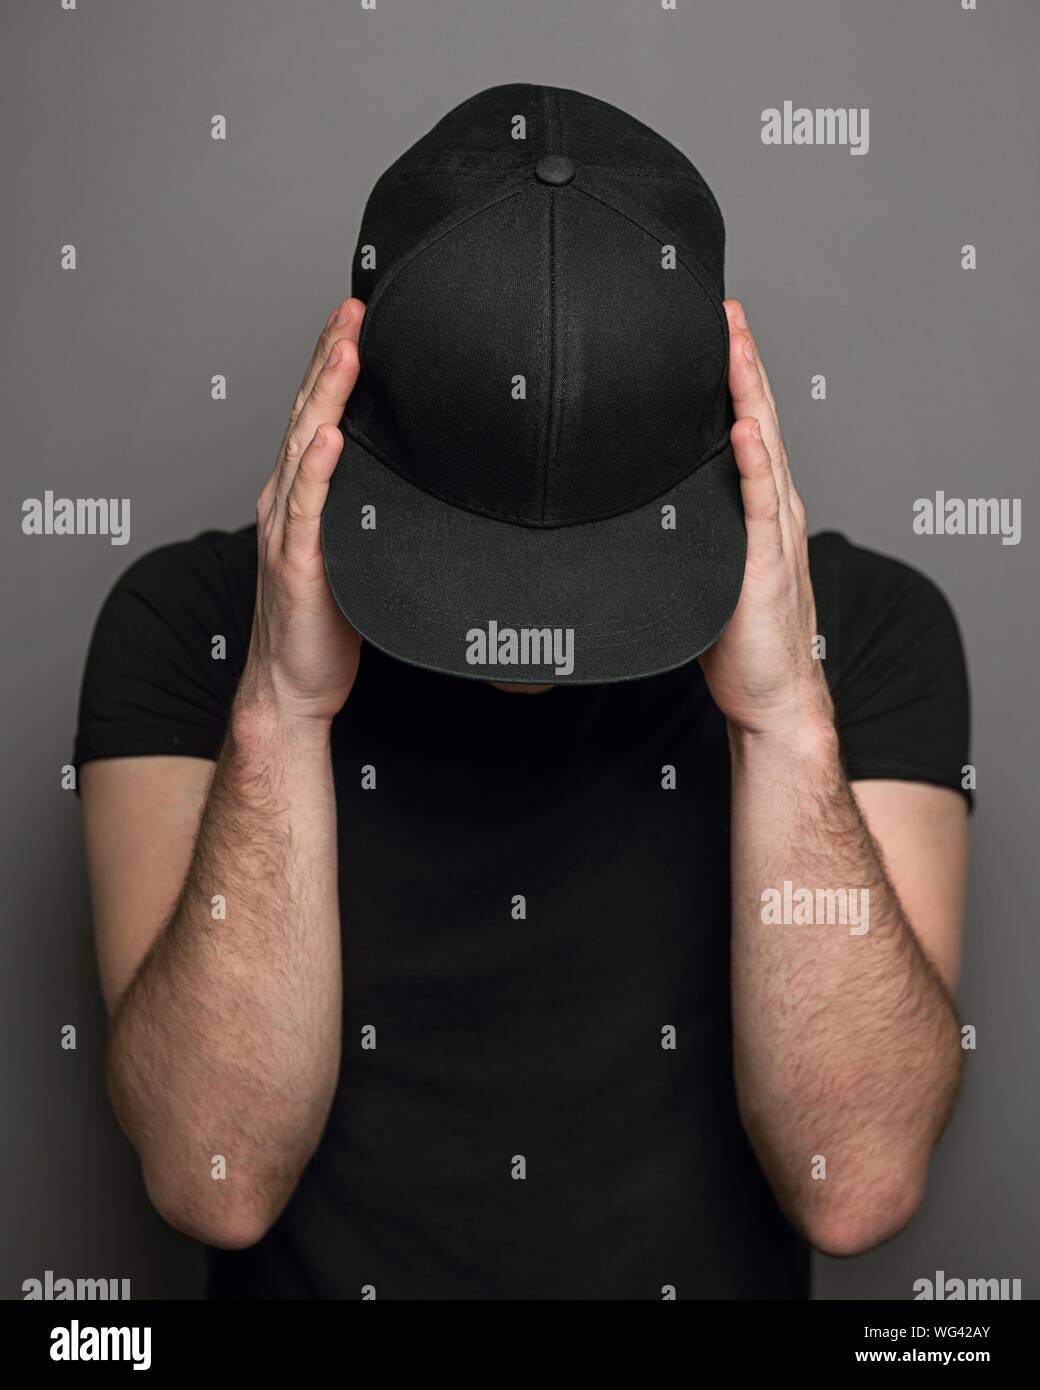 Hombre vestido con gorro negro y T-shirt contra un fondo gris Foto de stock